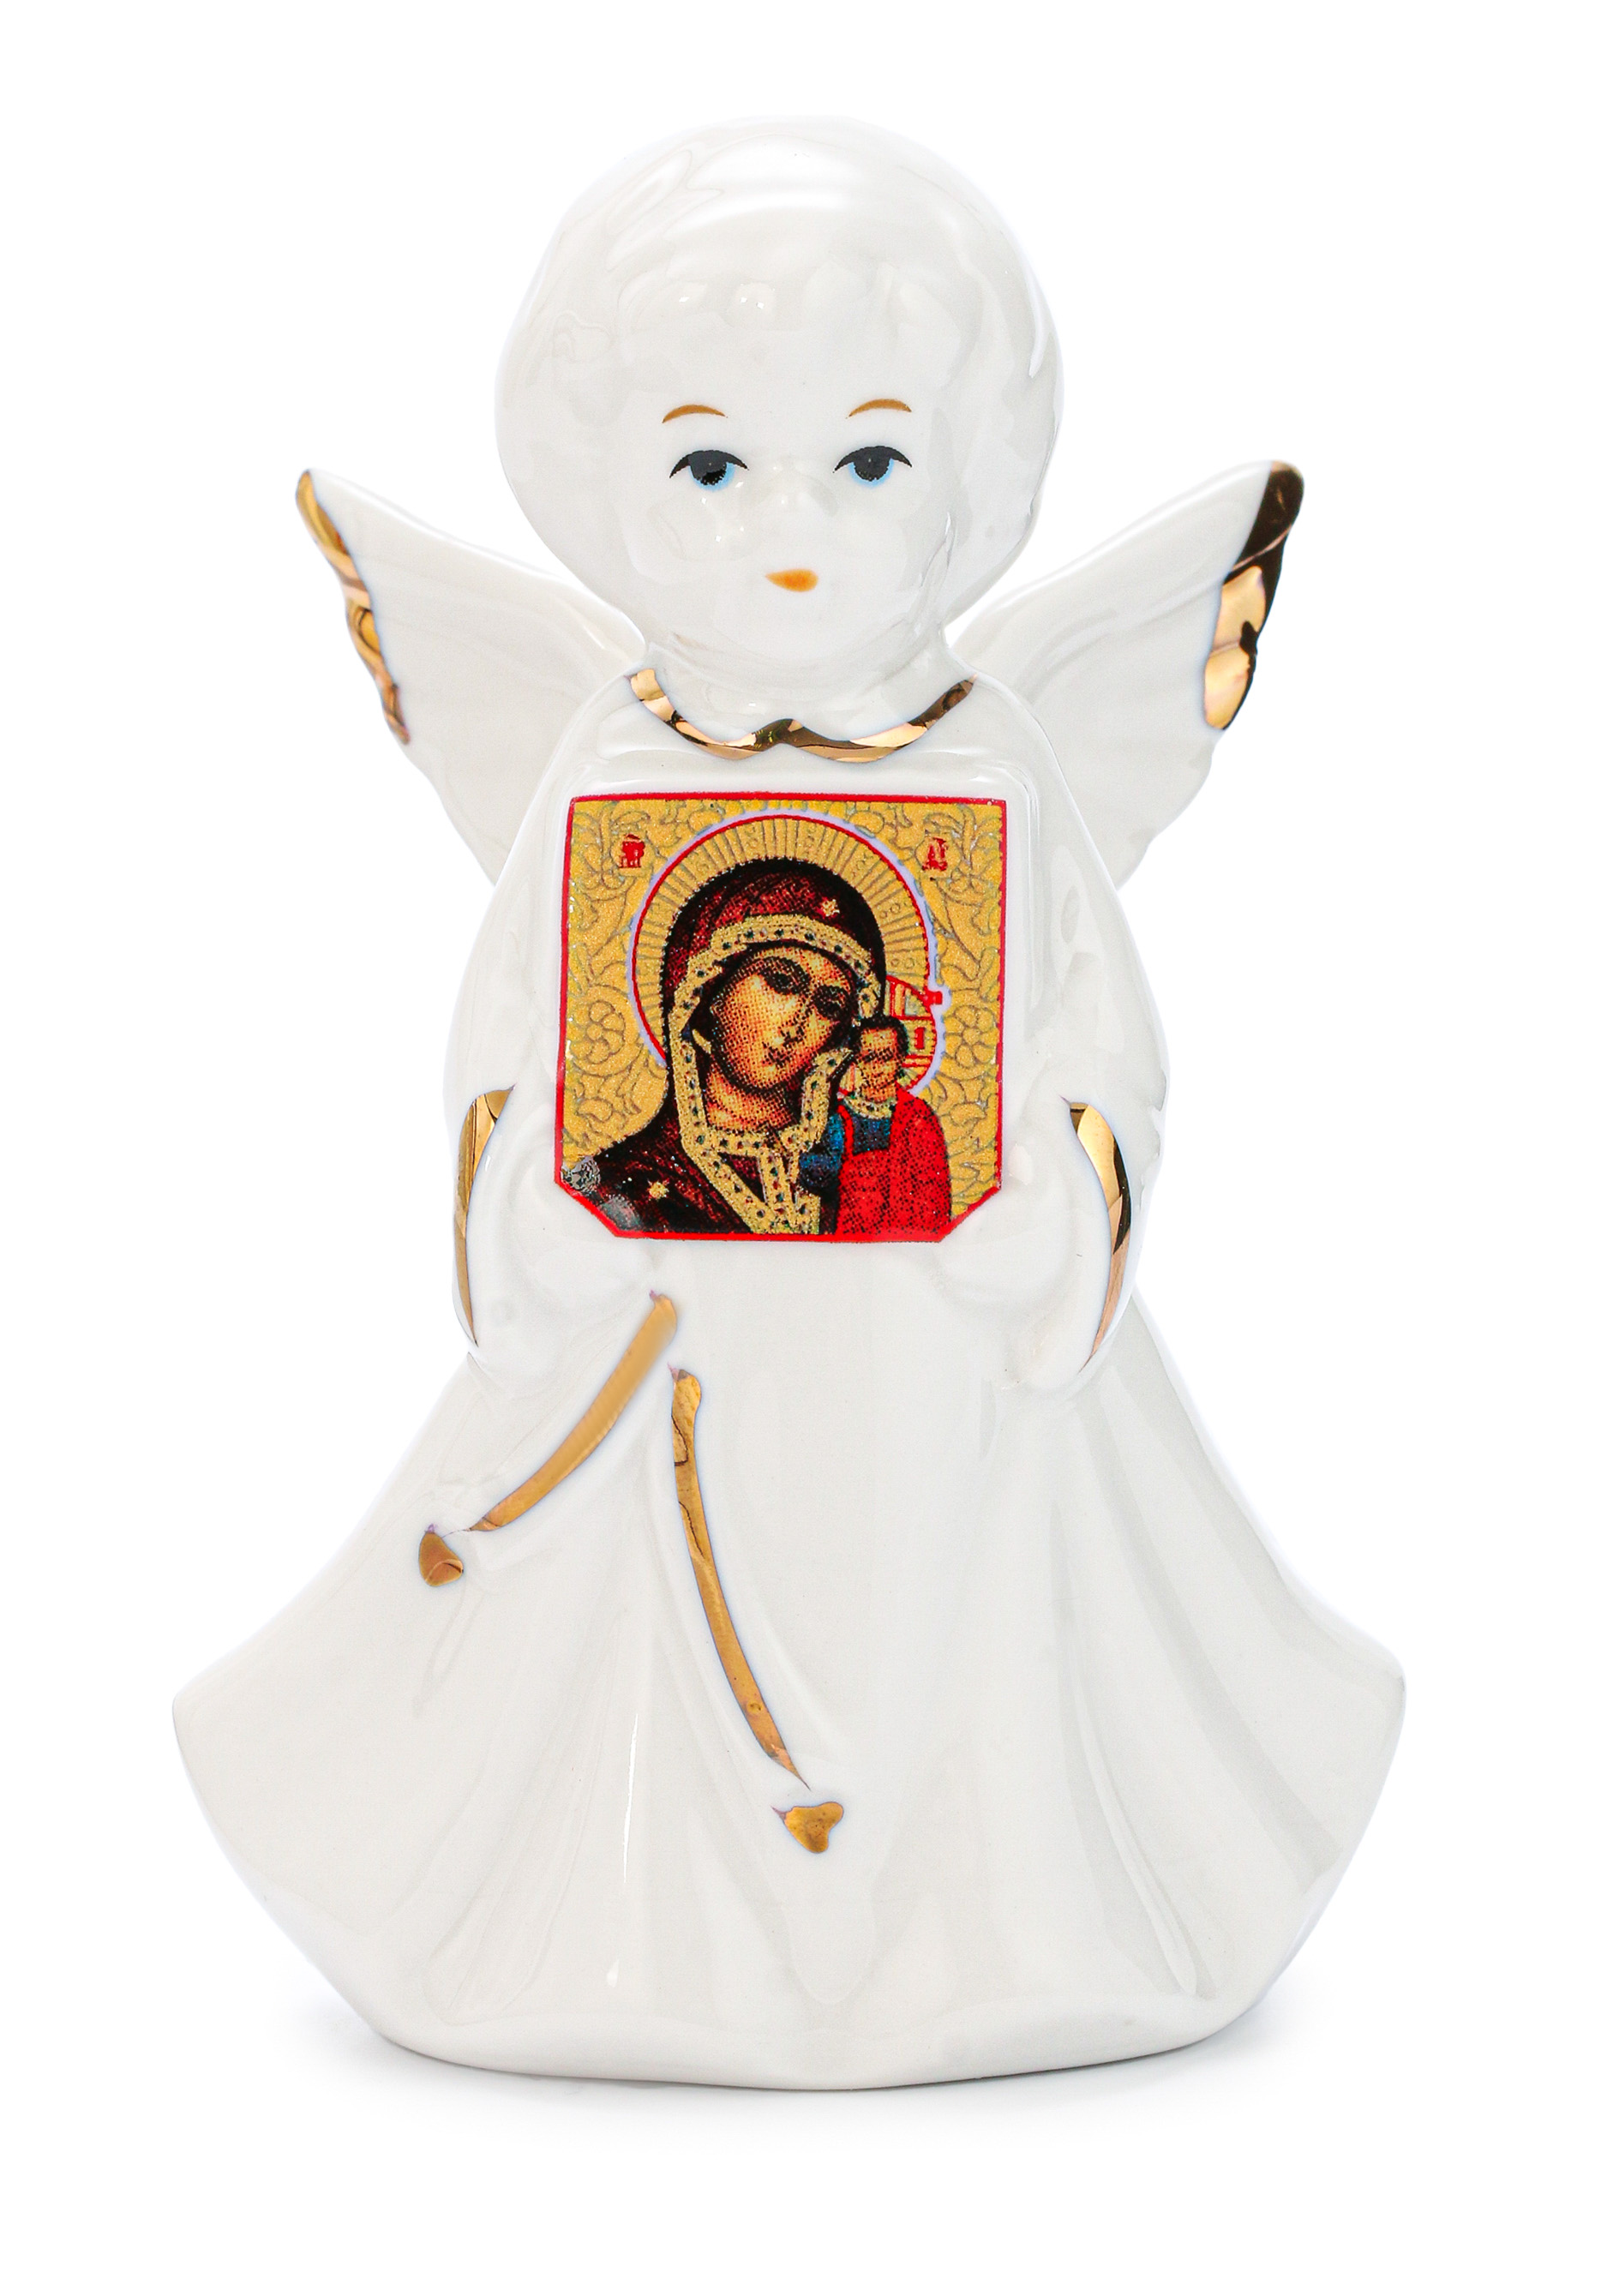 Статуэтка "Ангел с иконой" Lefard, цвет белый, размер 10 см - фото 5